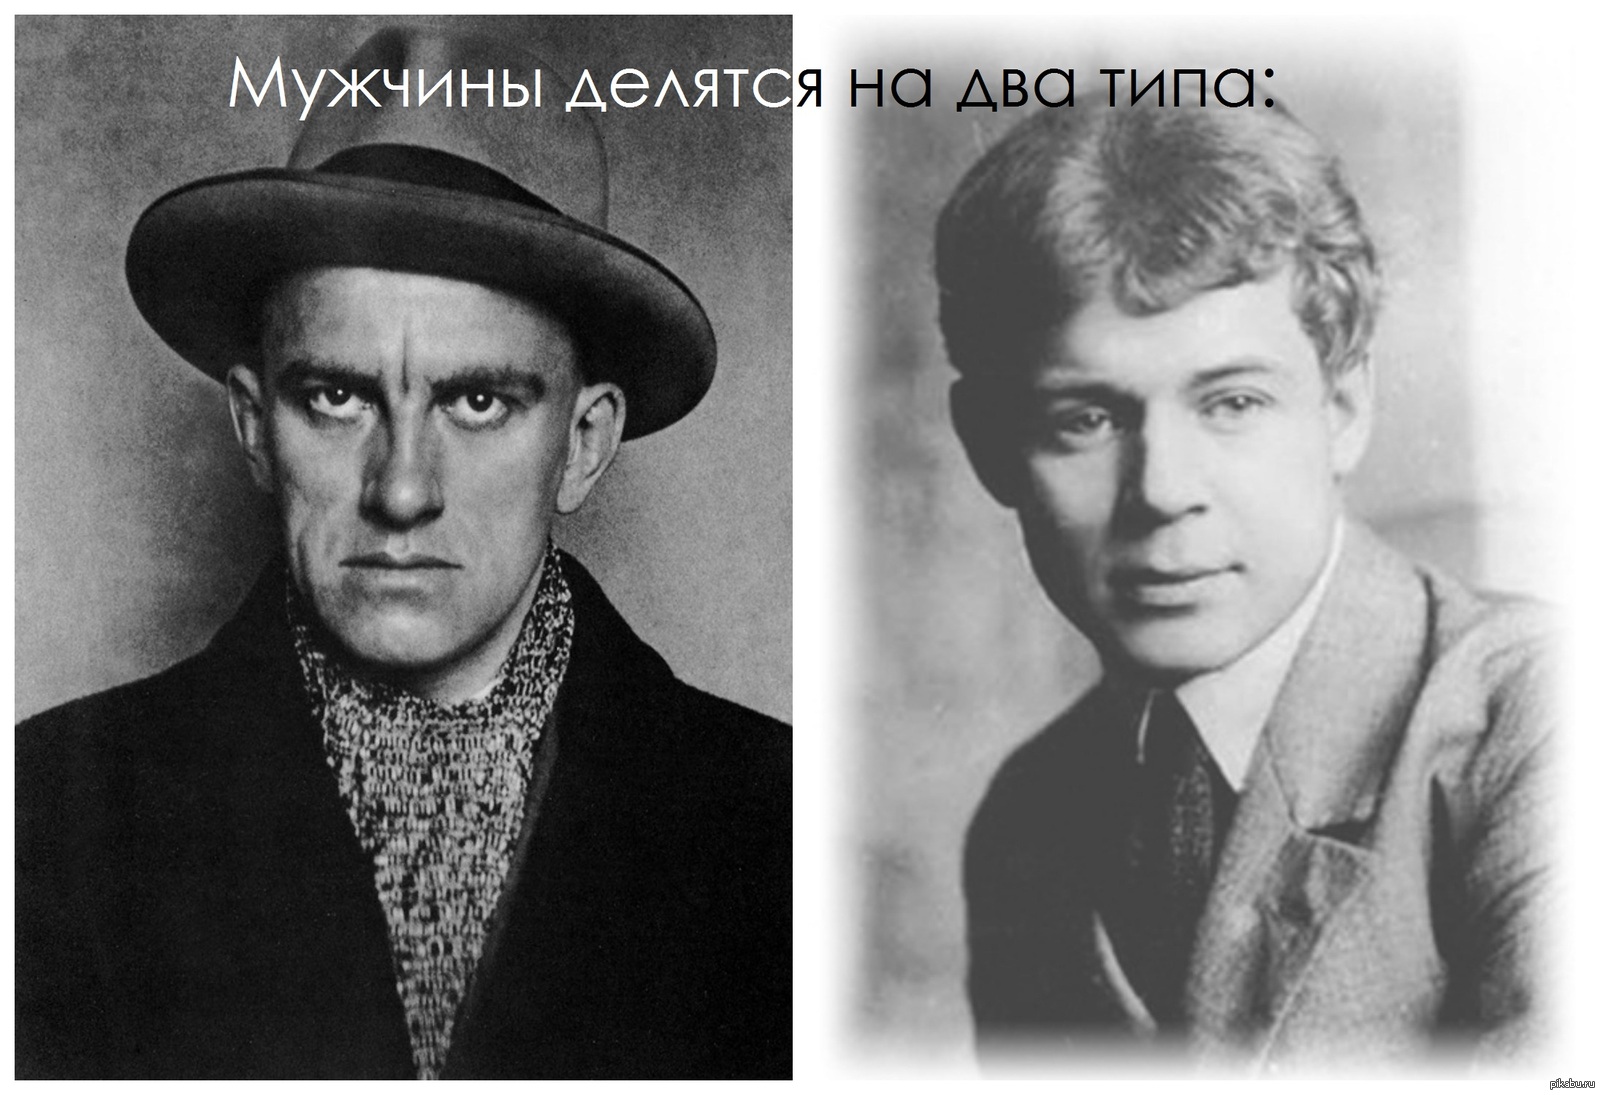 Маяковский сравнивал поэзию. Есенин и Маяковский арт.